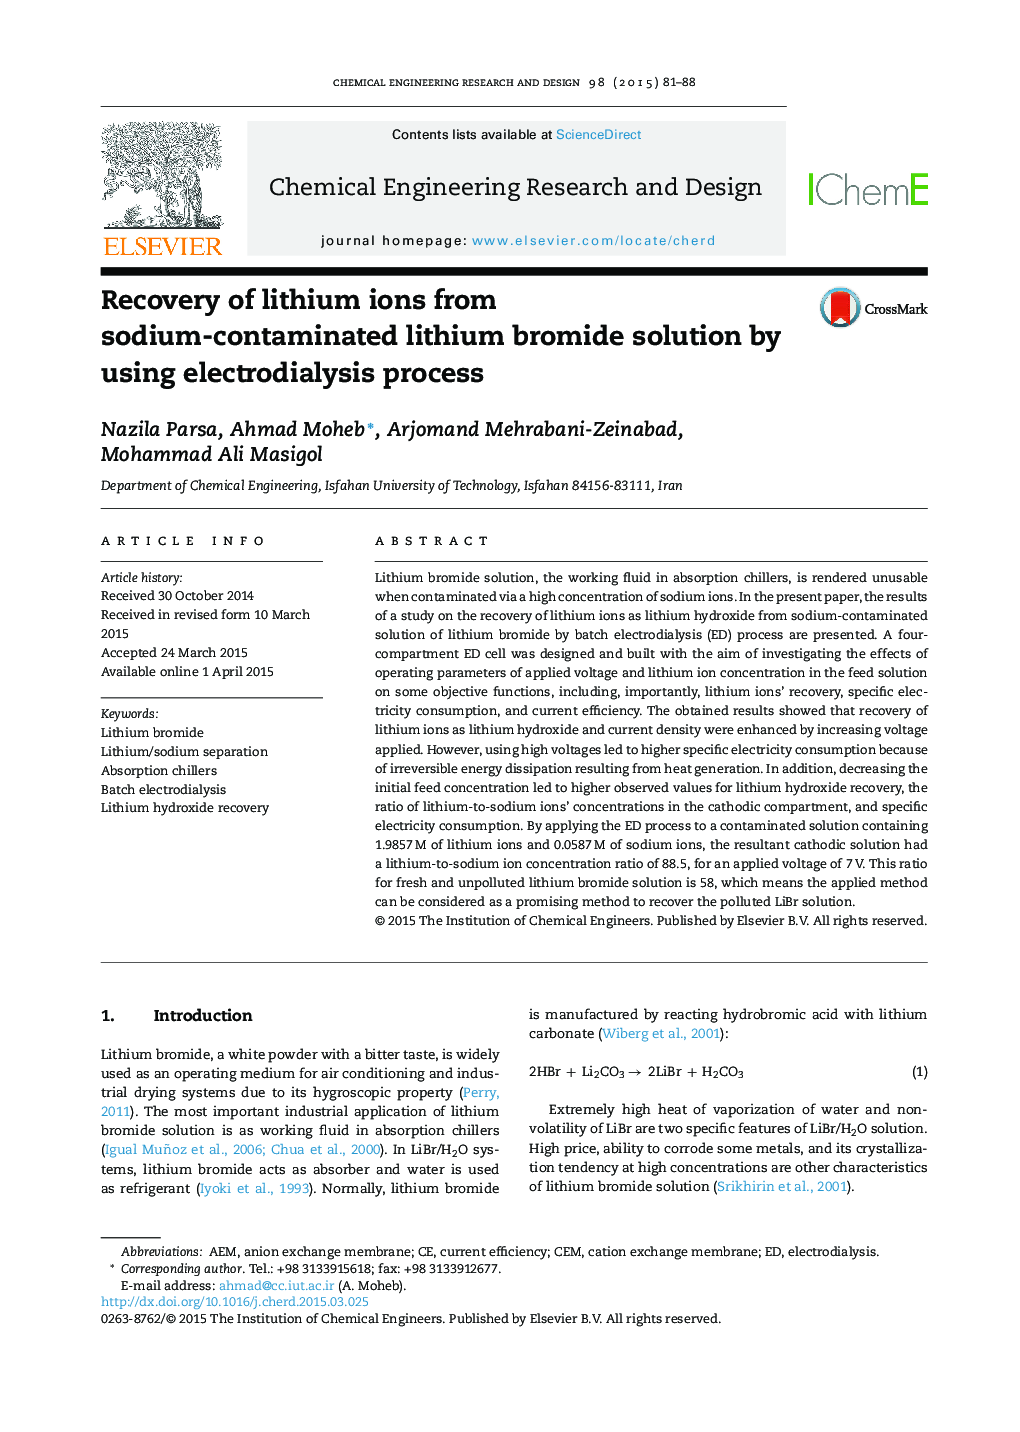 بازیابی یون های لیتیوم از محلول لیتیوم برمید آلوده به سدیم با استفاده از روش الکترو دی دیالیز 